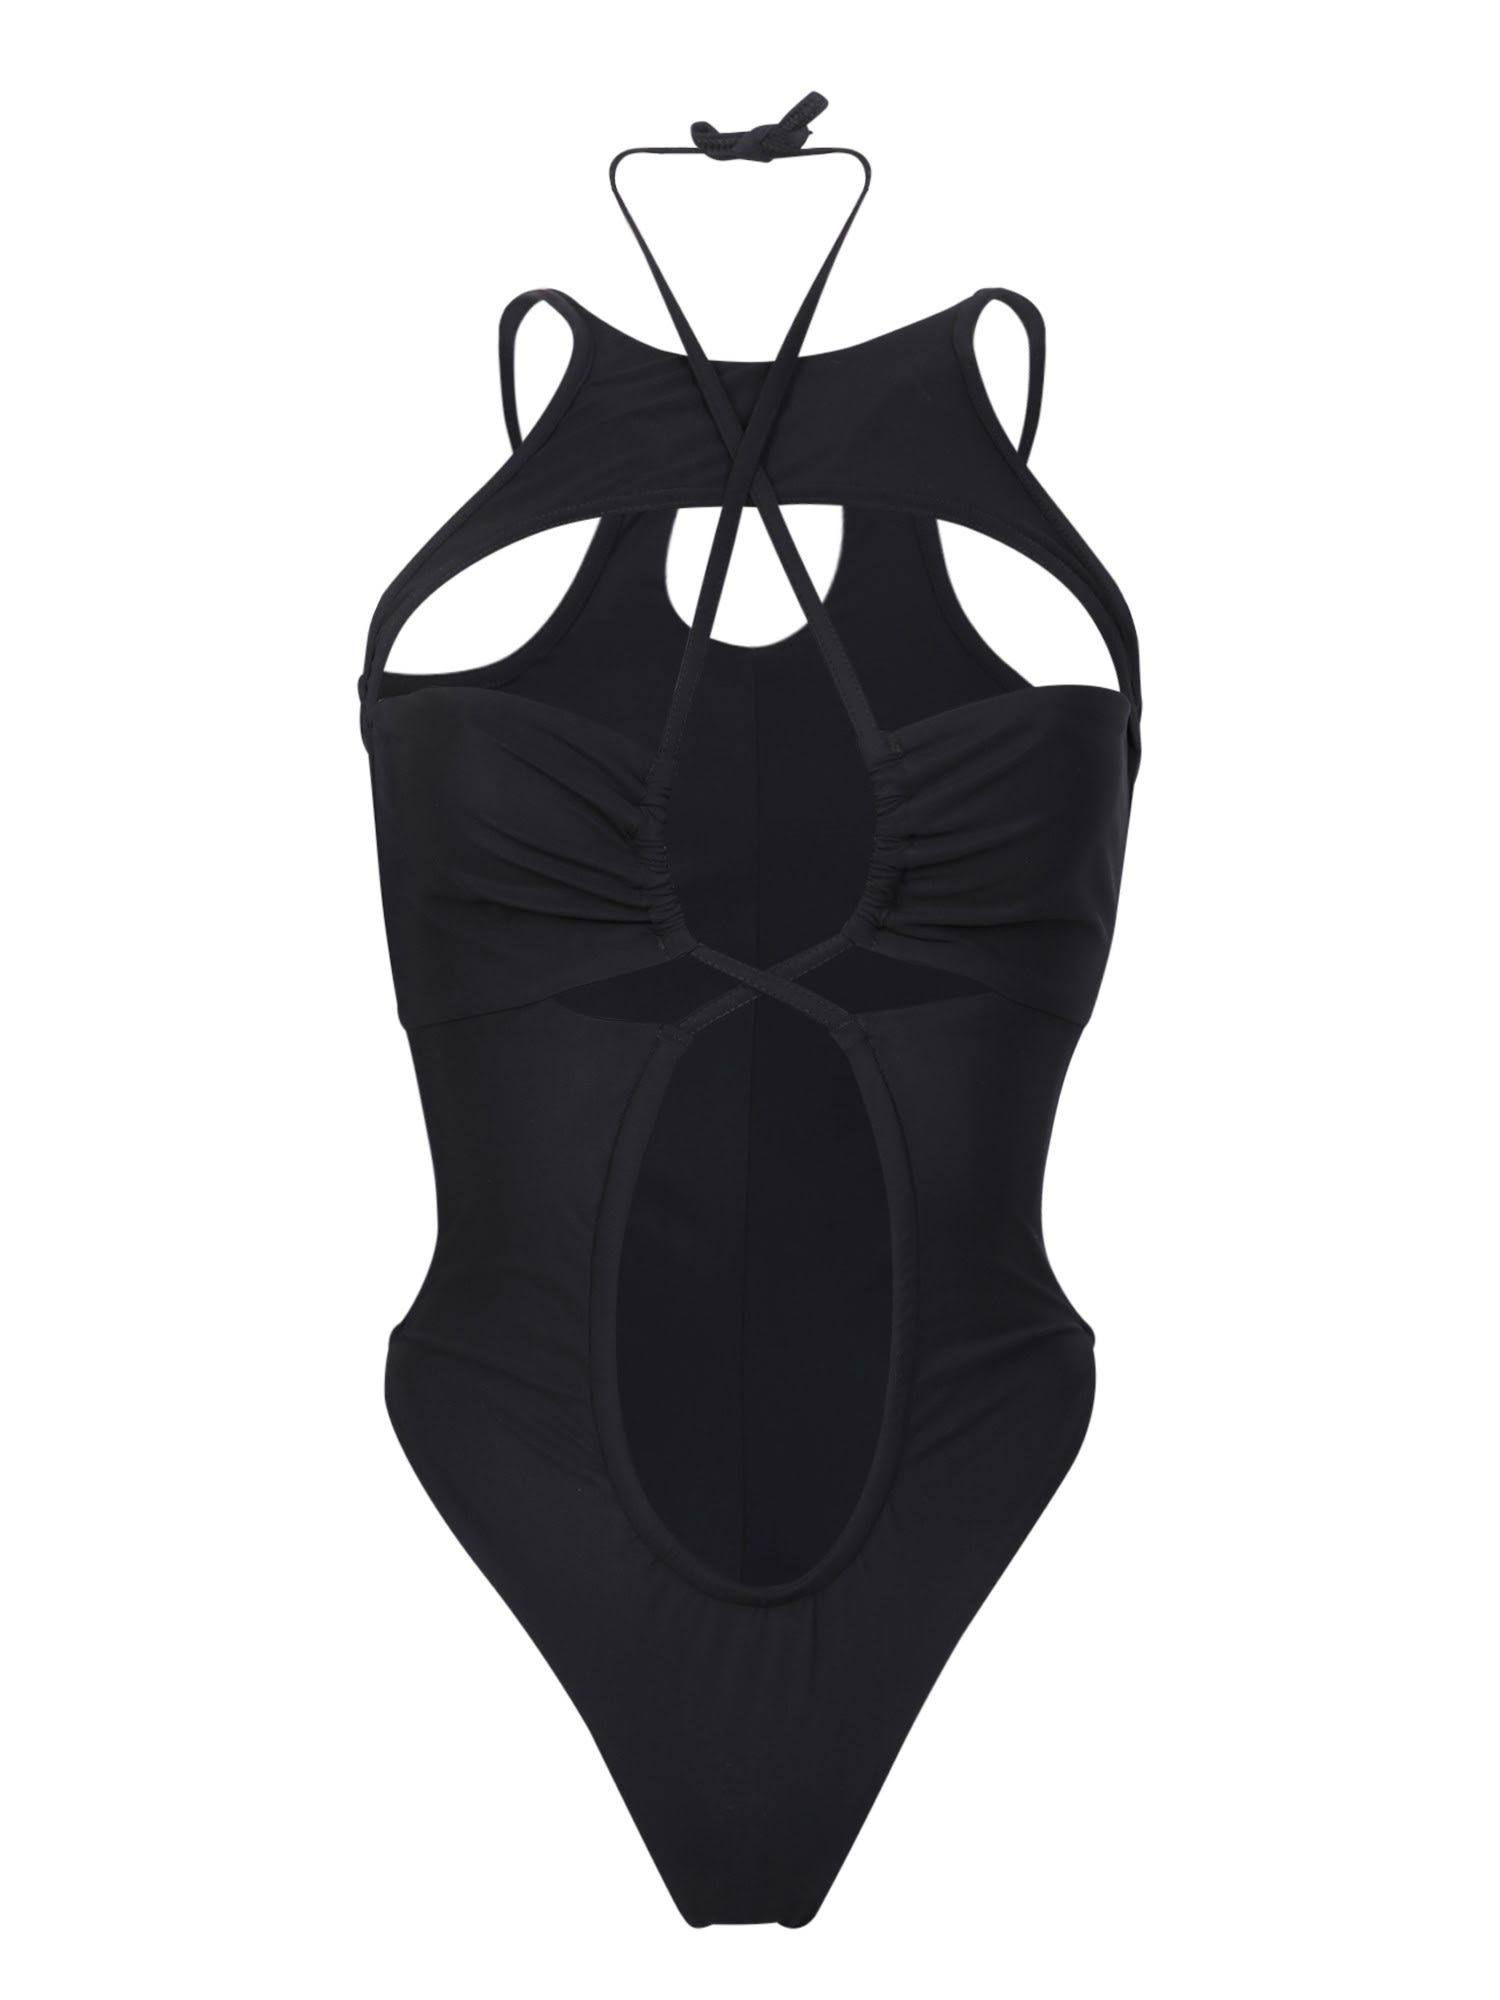 ANDREĀDAMO One-piece Black Swimwear